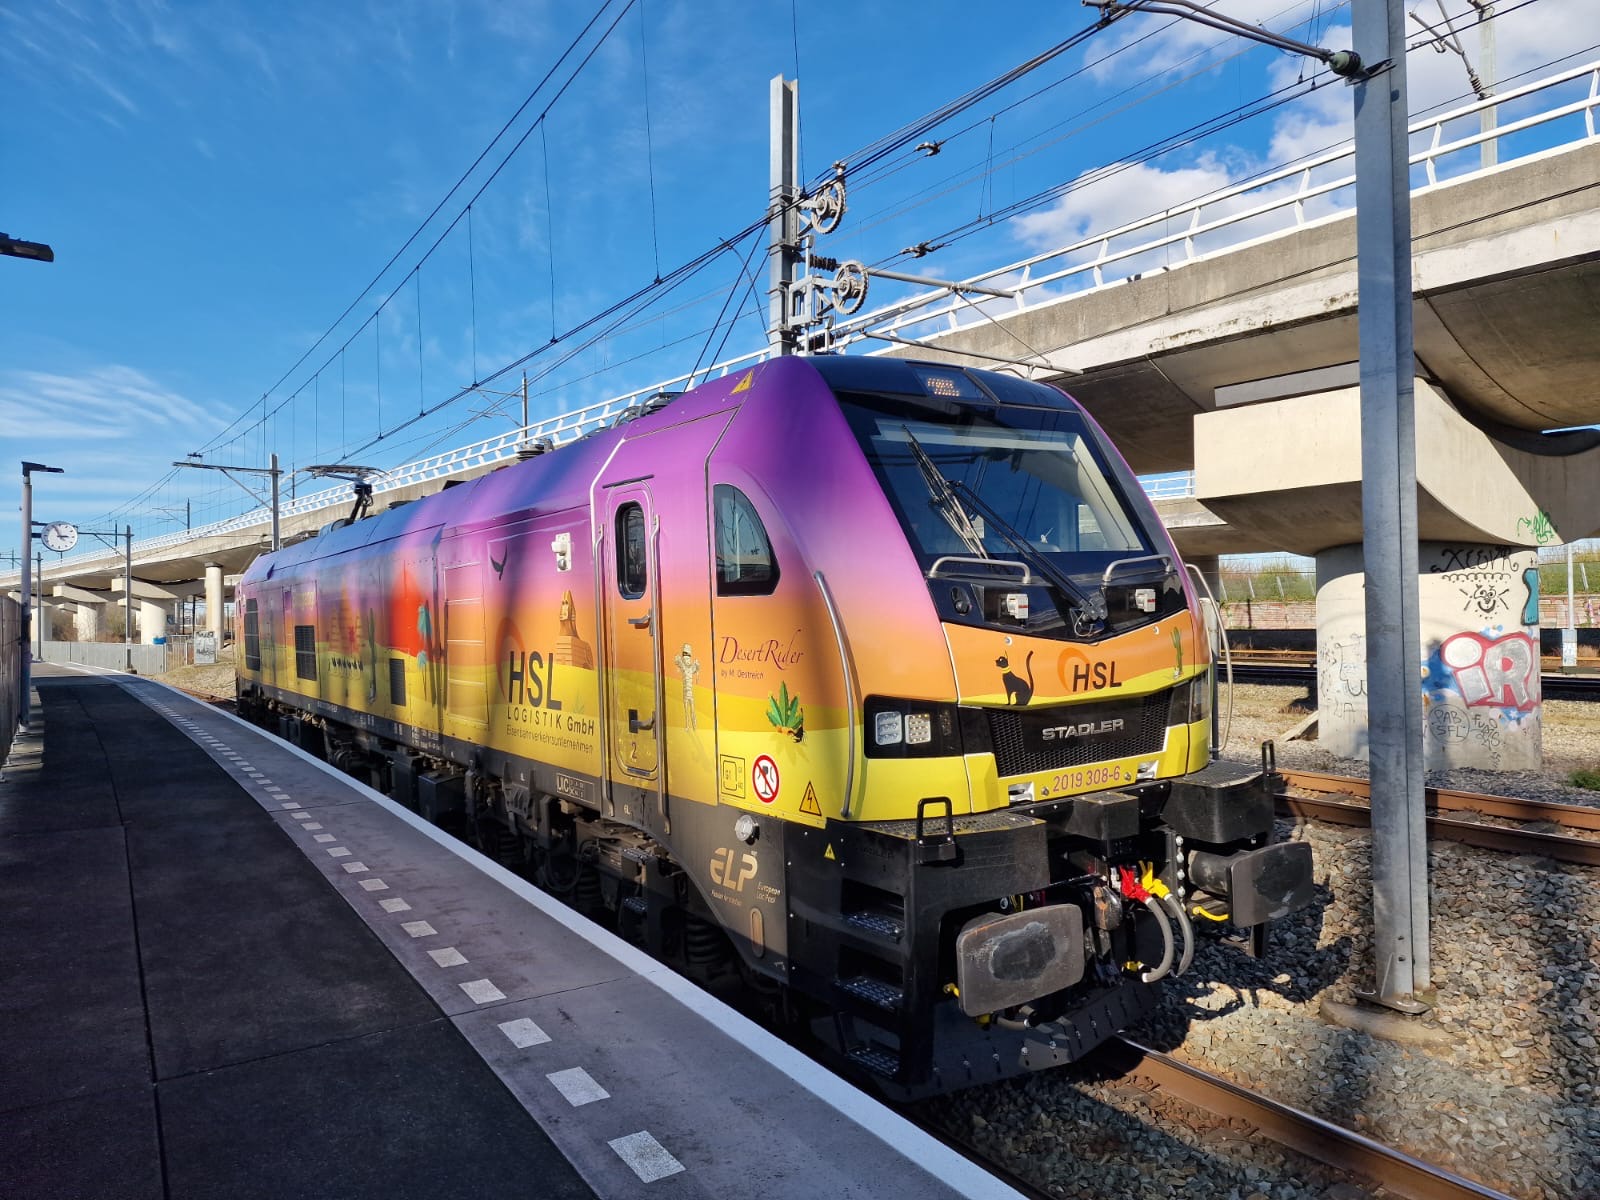 HSL Logistiek Nederland Rail Cargo trein